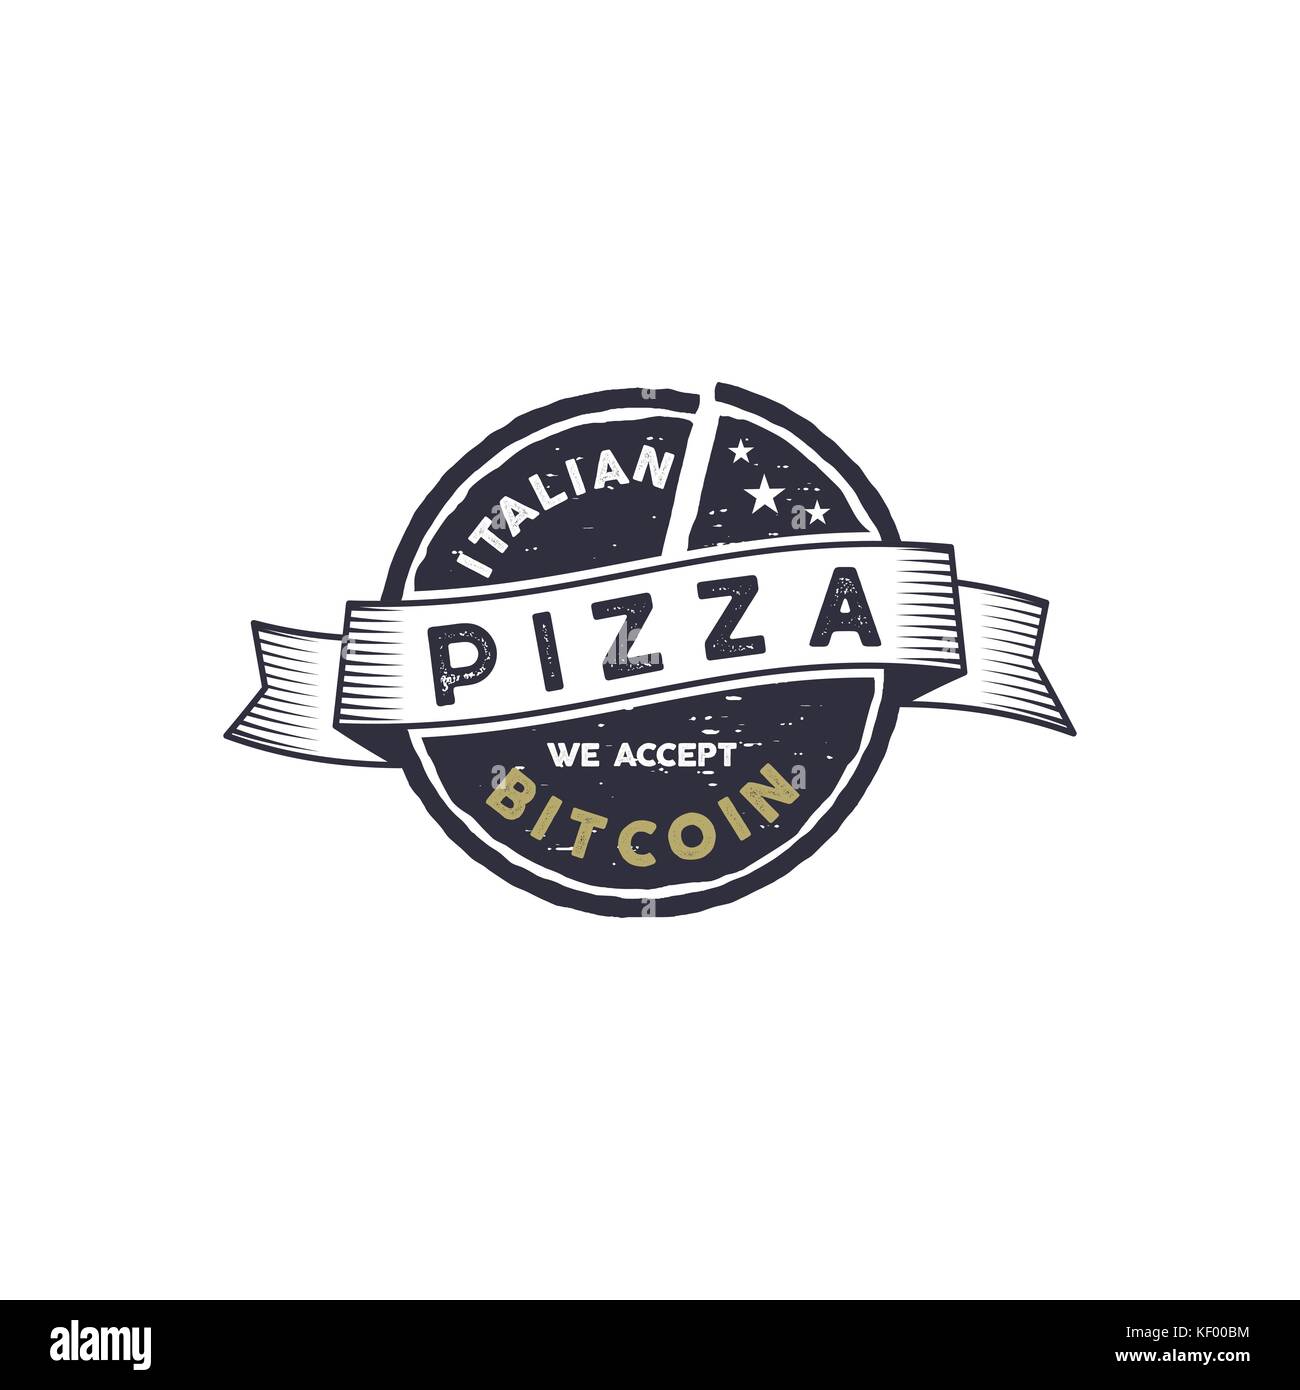 Pizza italienne pour emblème bitcoin. Nous acceptons btc logo design. les biens numériques pour des biens réels concept. vintage style dessiné à la main. stock vector illustration isolé sur fond blanc Illustration de Vecteur